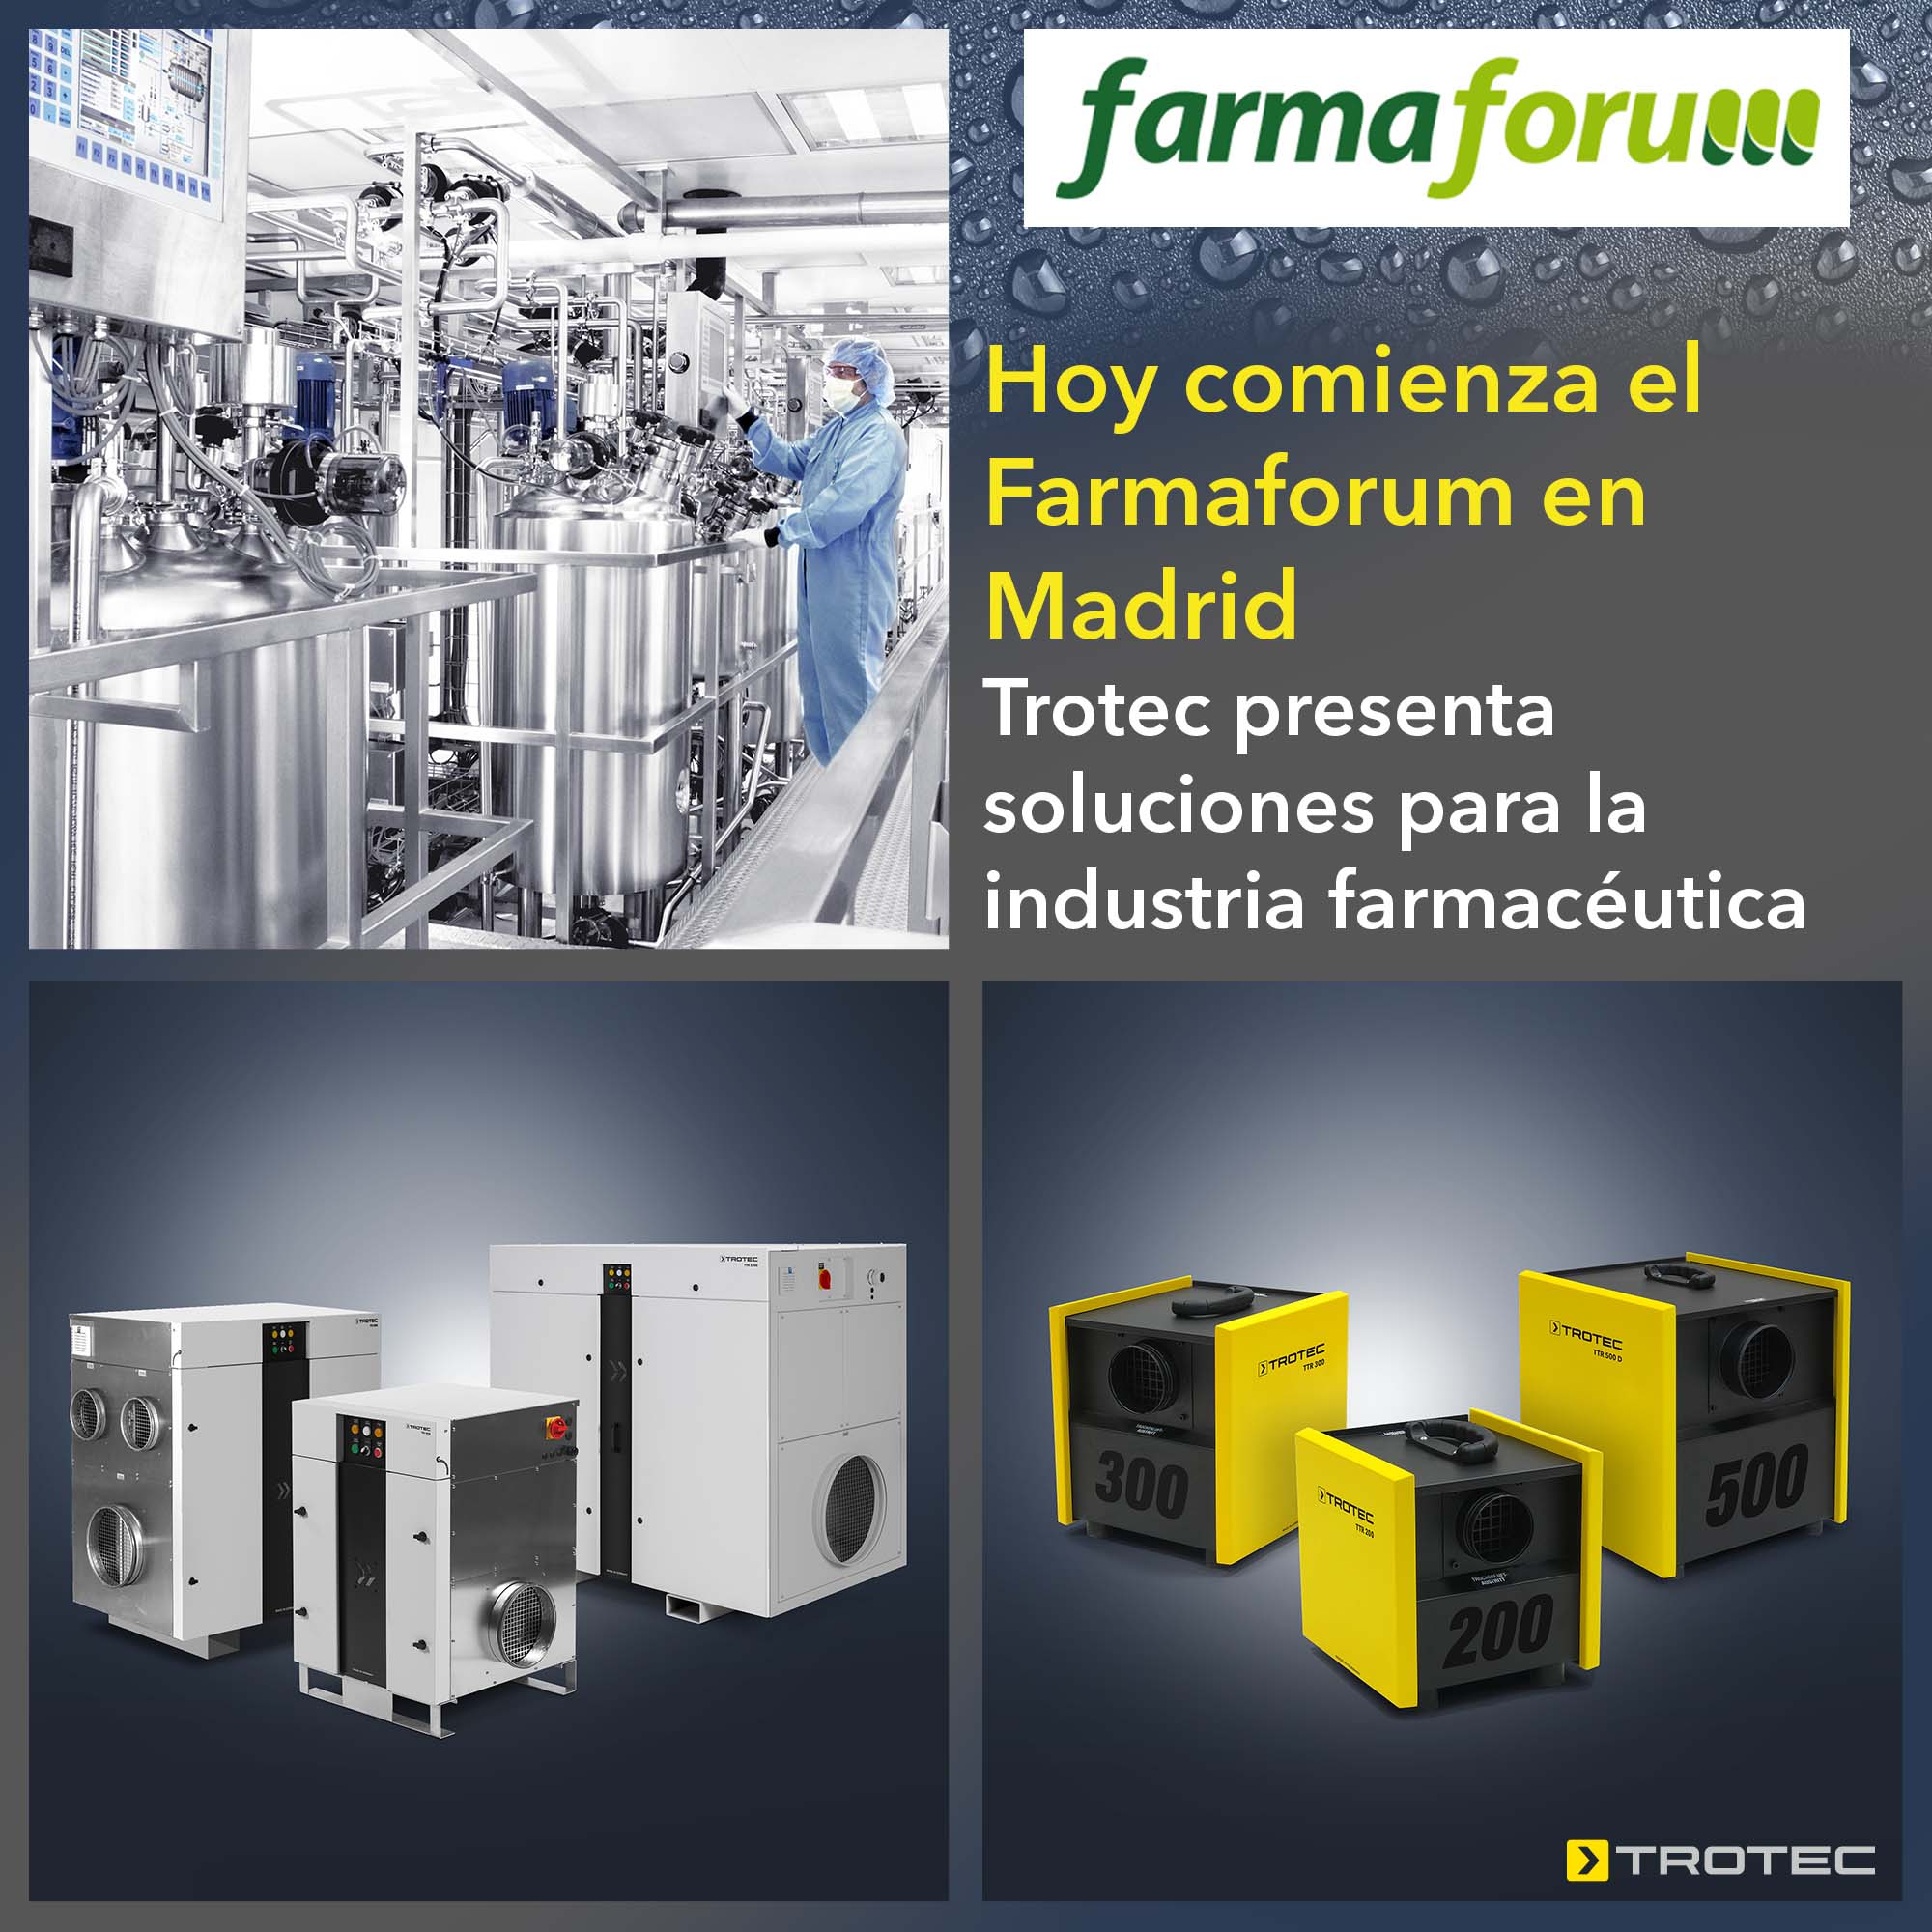 Hoy comienza el Farmaforum en Madrid: Trotec presenta soluciones para la industria farmacéutica